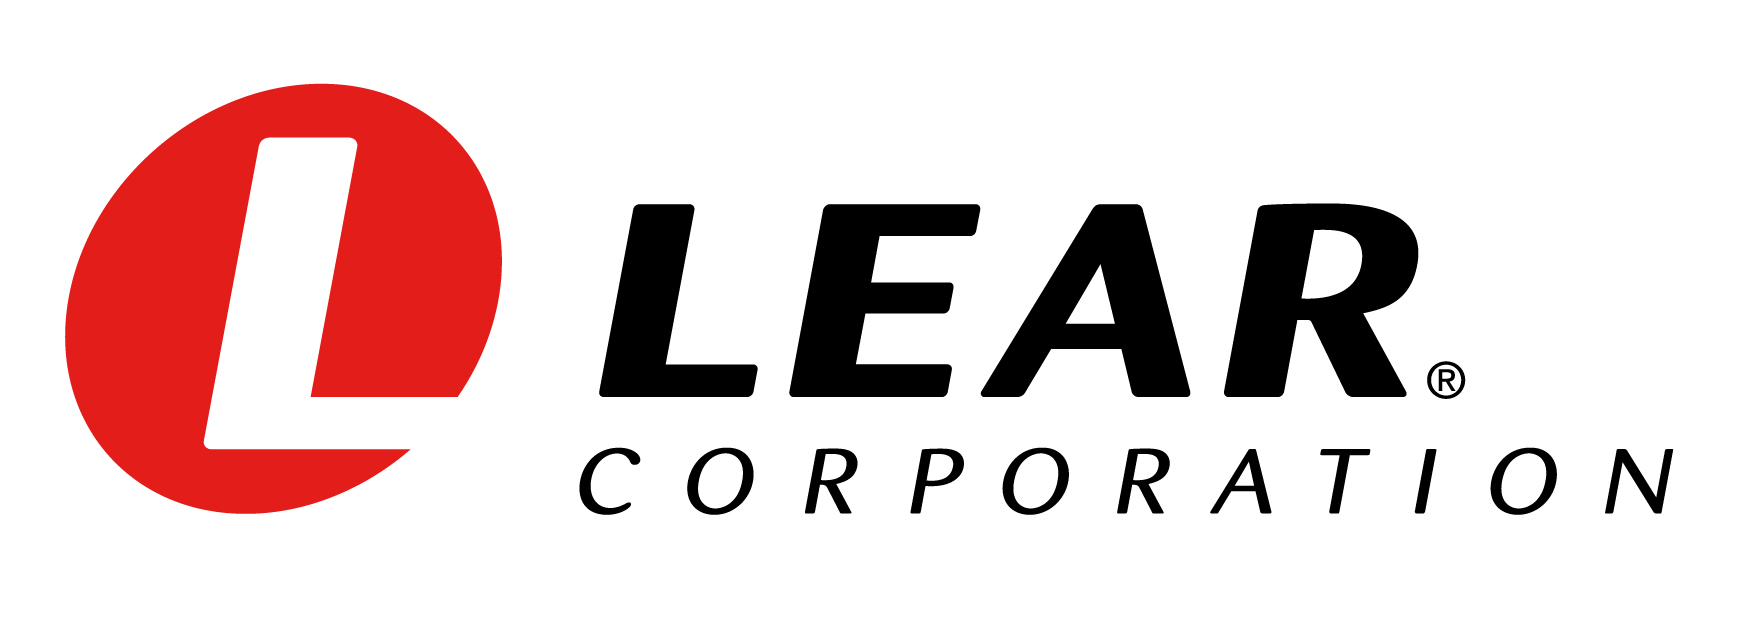 Lear Logo - Original Pantone 485C and Black.jpg